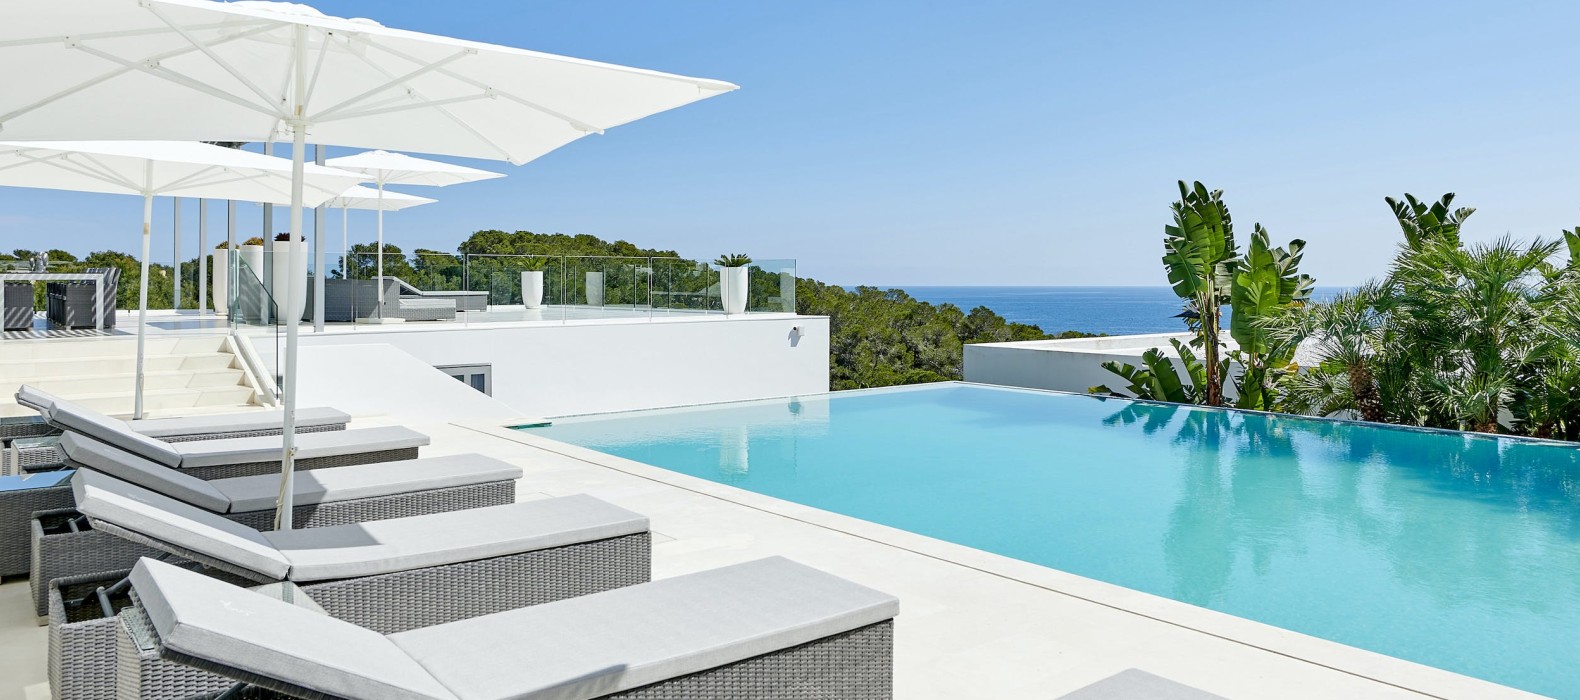 Exterior pool area with sea view of Villa La Colina in Ibiza